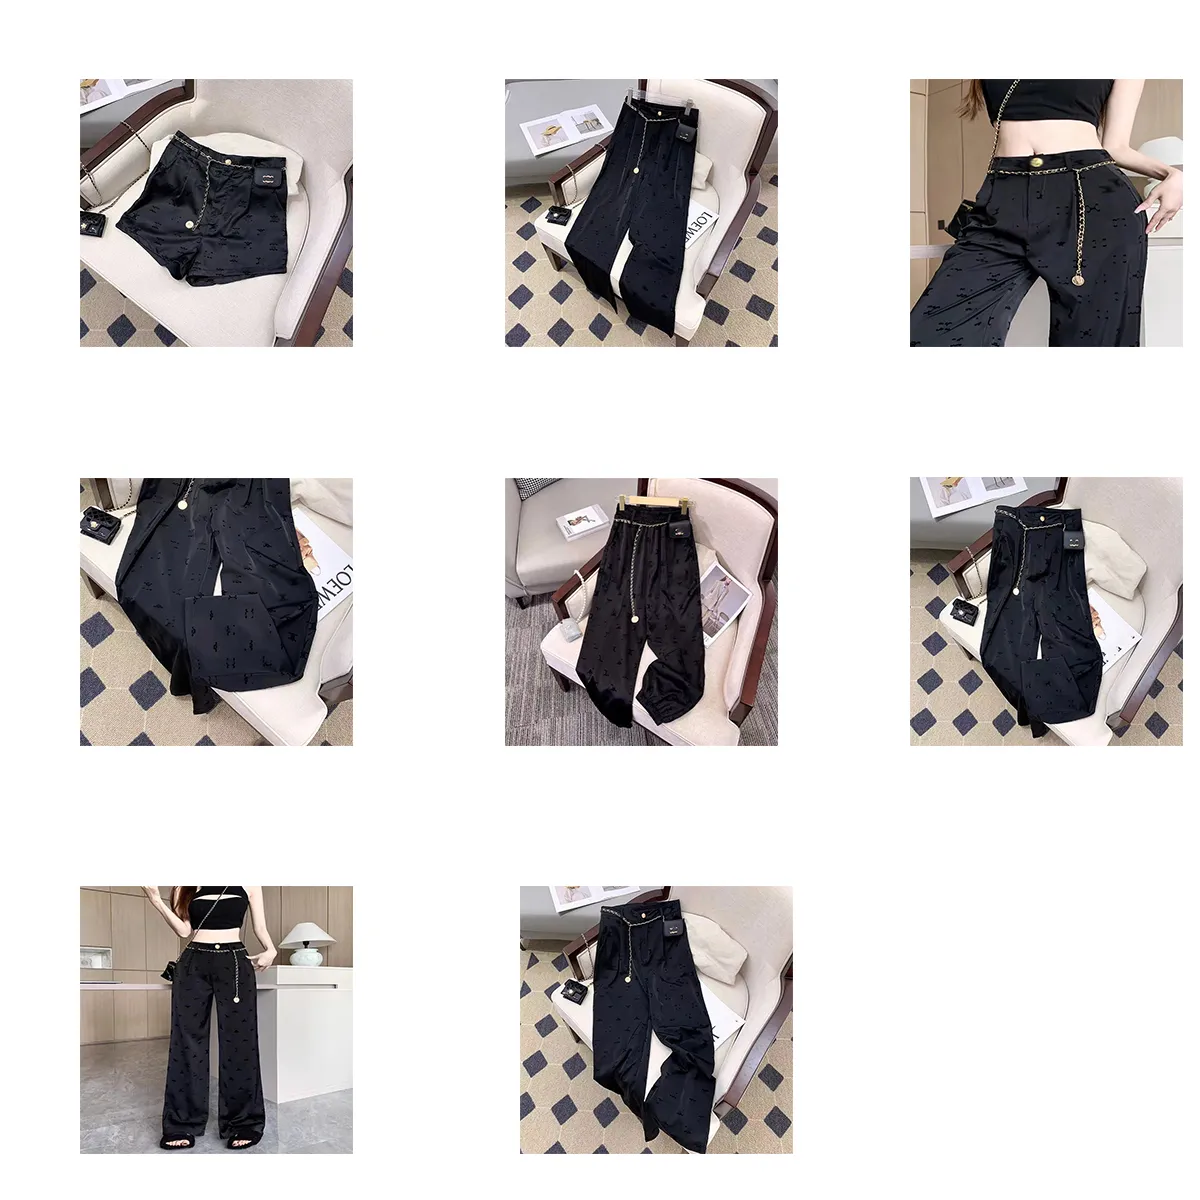 Küçük Kadın Pantolon Tasarımcı Tayt Bikini Koku Mayo Gevşek Elastik Siyah Nefes Alabası Dikey Büyük Marka Tasarımı nazik rahatlama